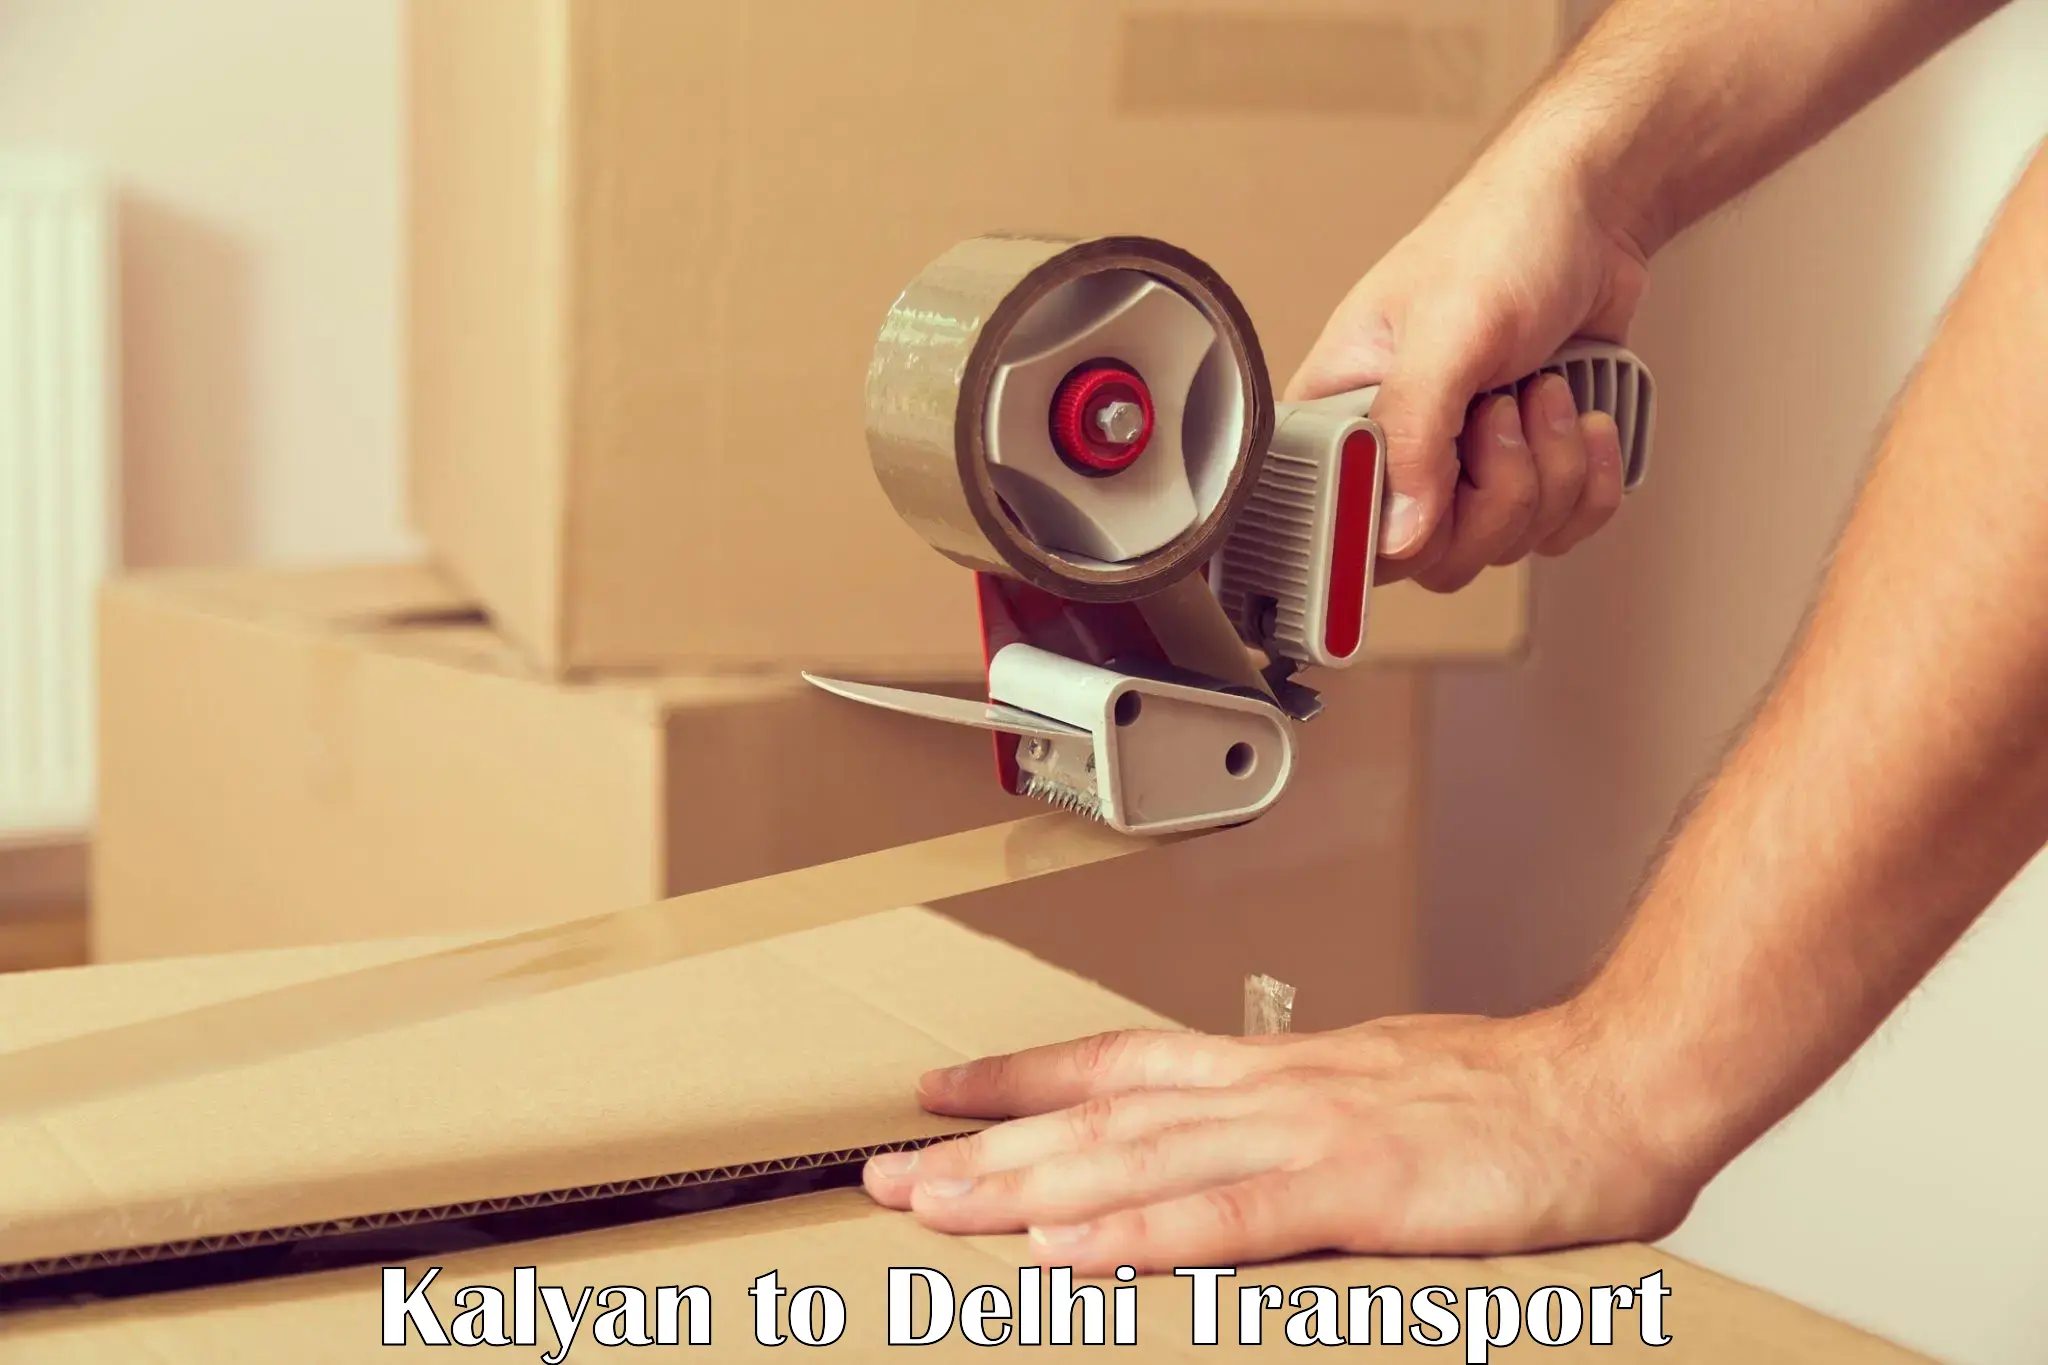 Air freight transport services Kalyan to IIT Delhi